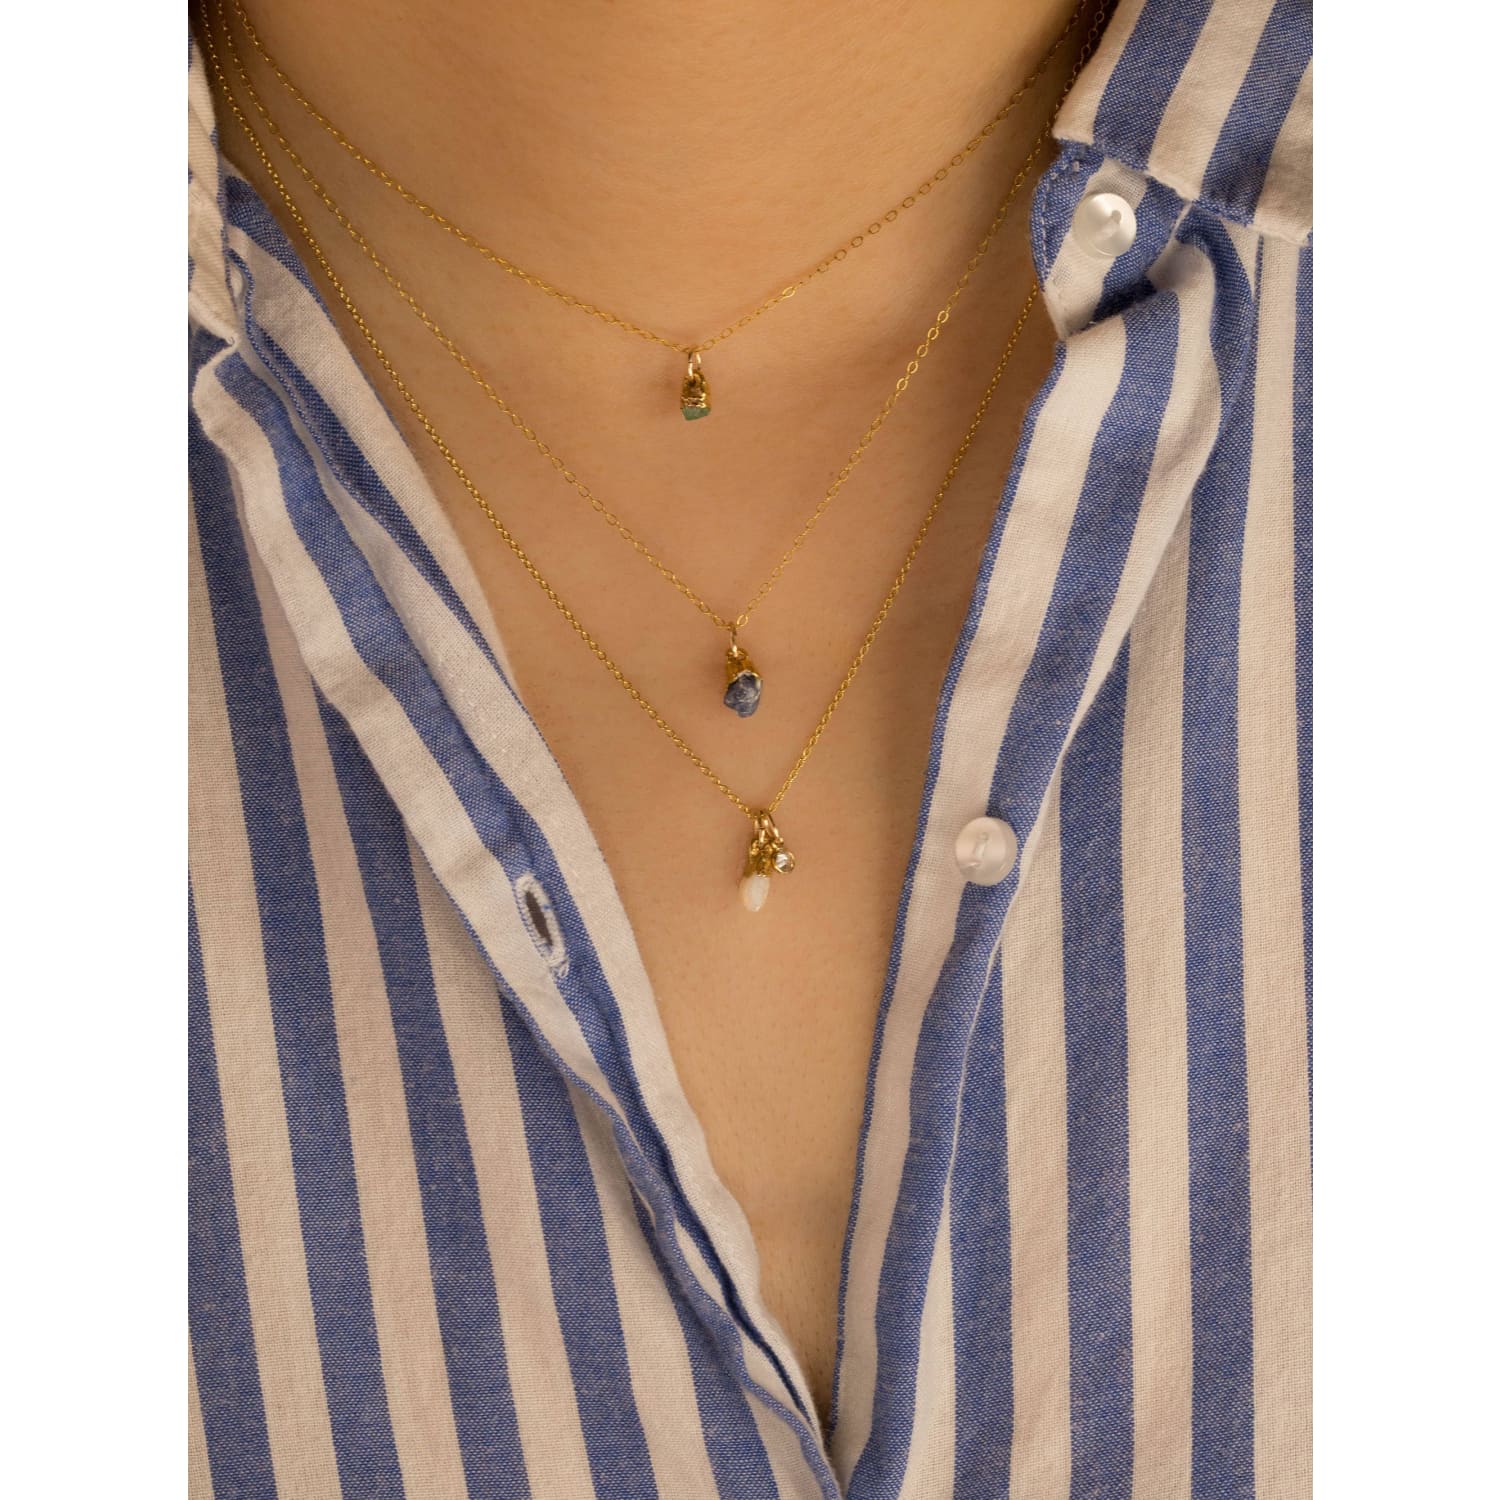 Raw Aquamarine Necklace, Aquamarine and Gold Necklace, Aquamarine Jewelry,  Raw Stone Necklace, March Birthstone Necklace, Gold Necklace - Etsy